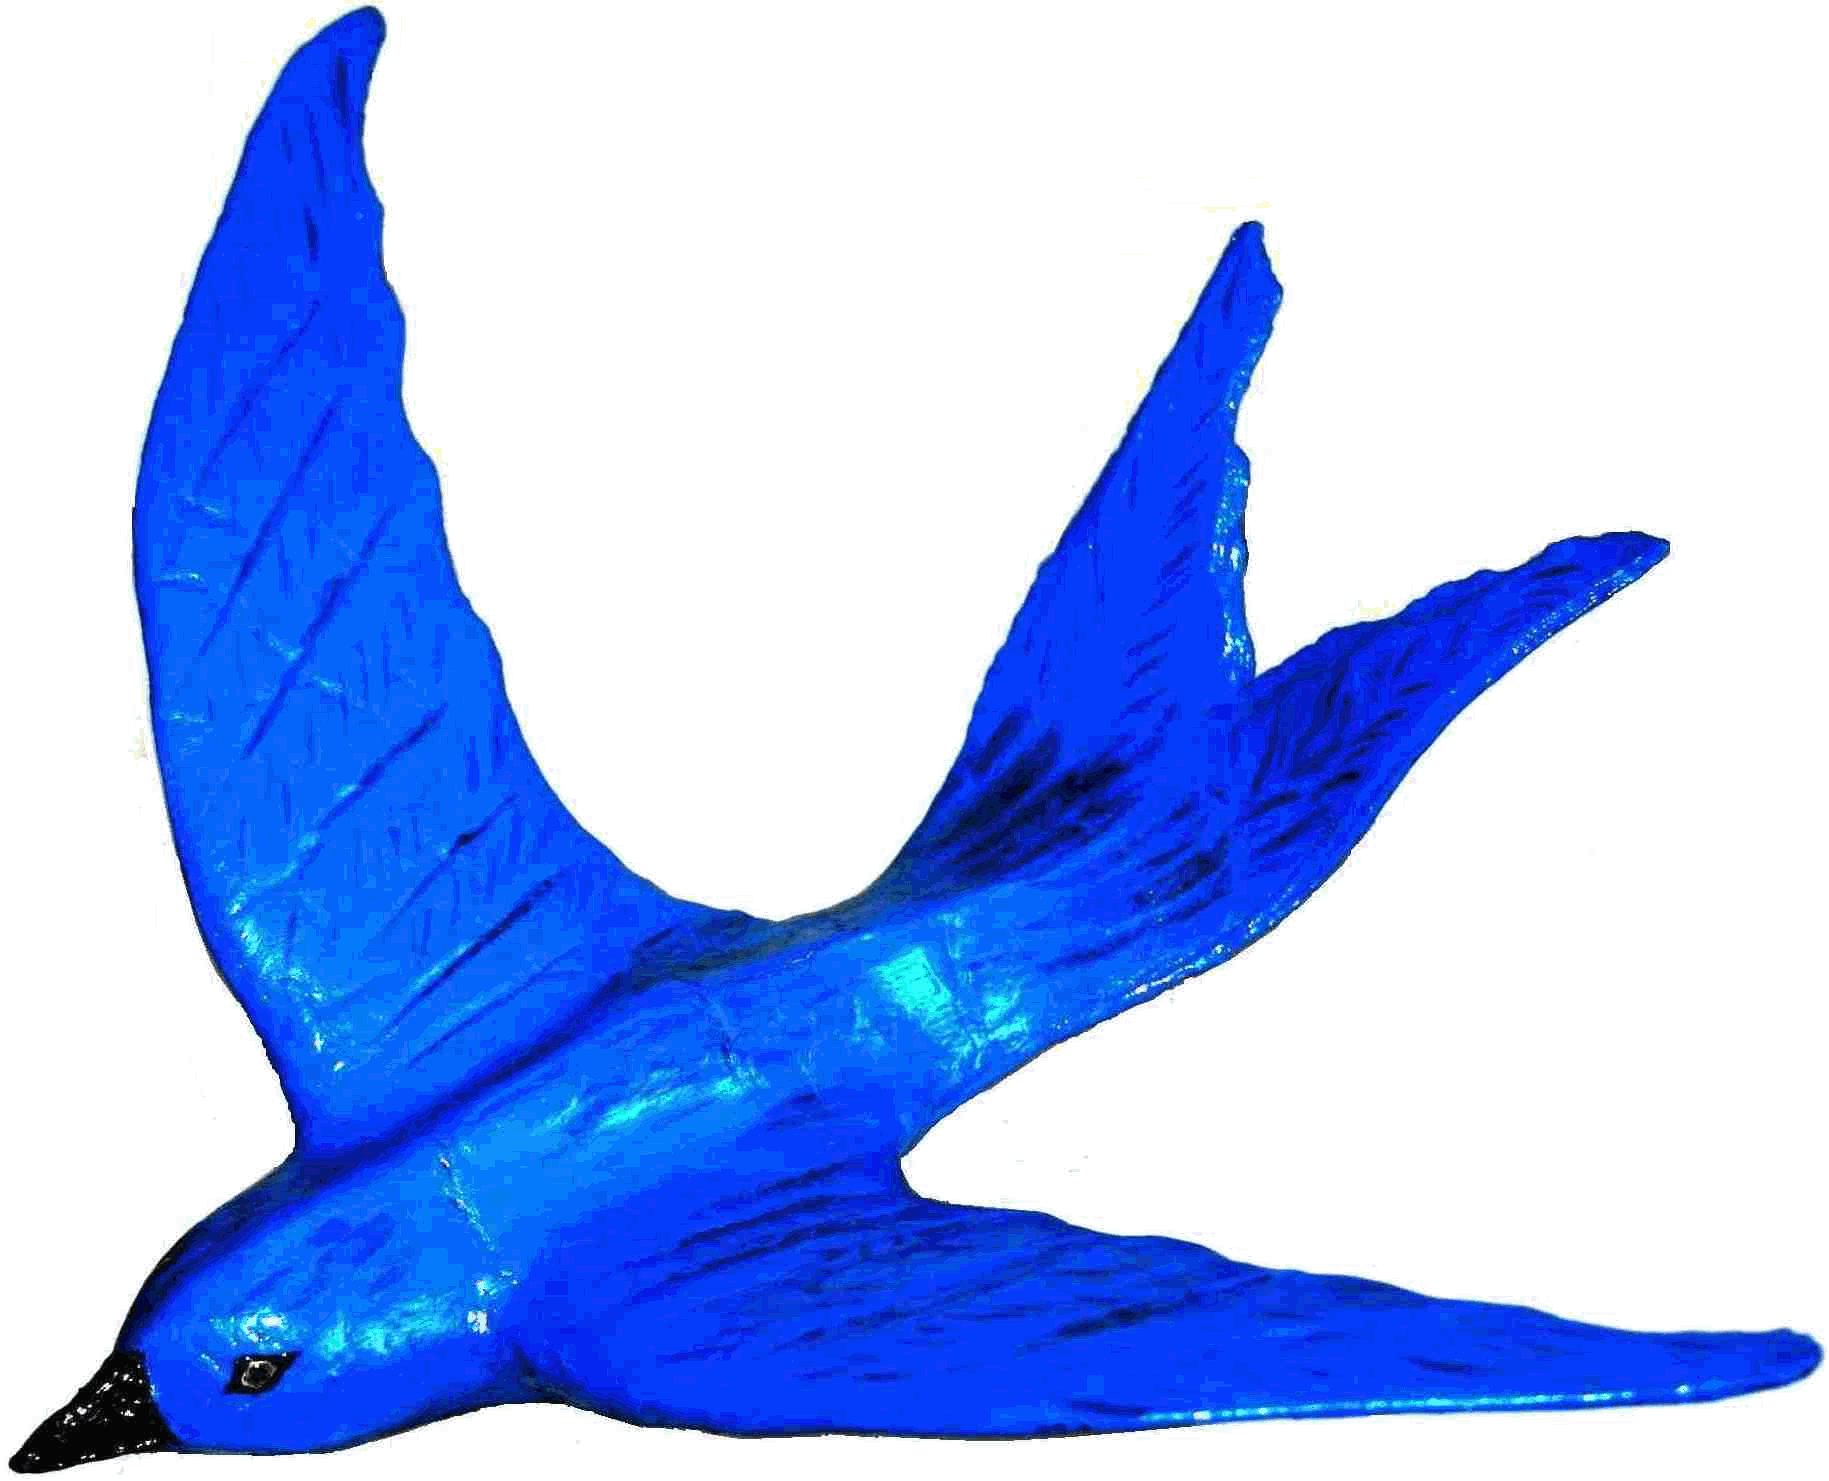 Blue bird and Bluebird trademarks, logos and legends - original sculpture, design copyright